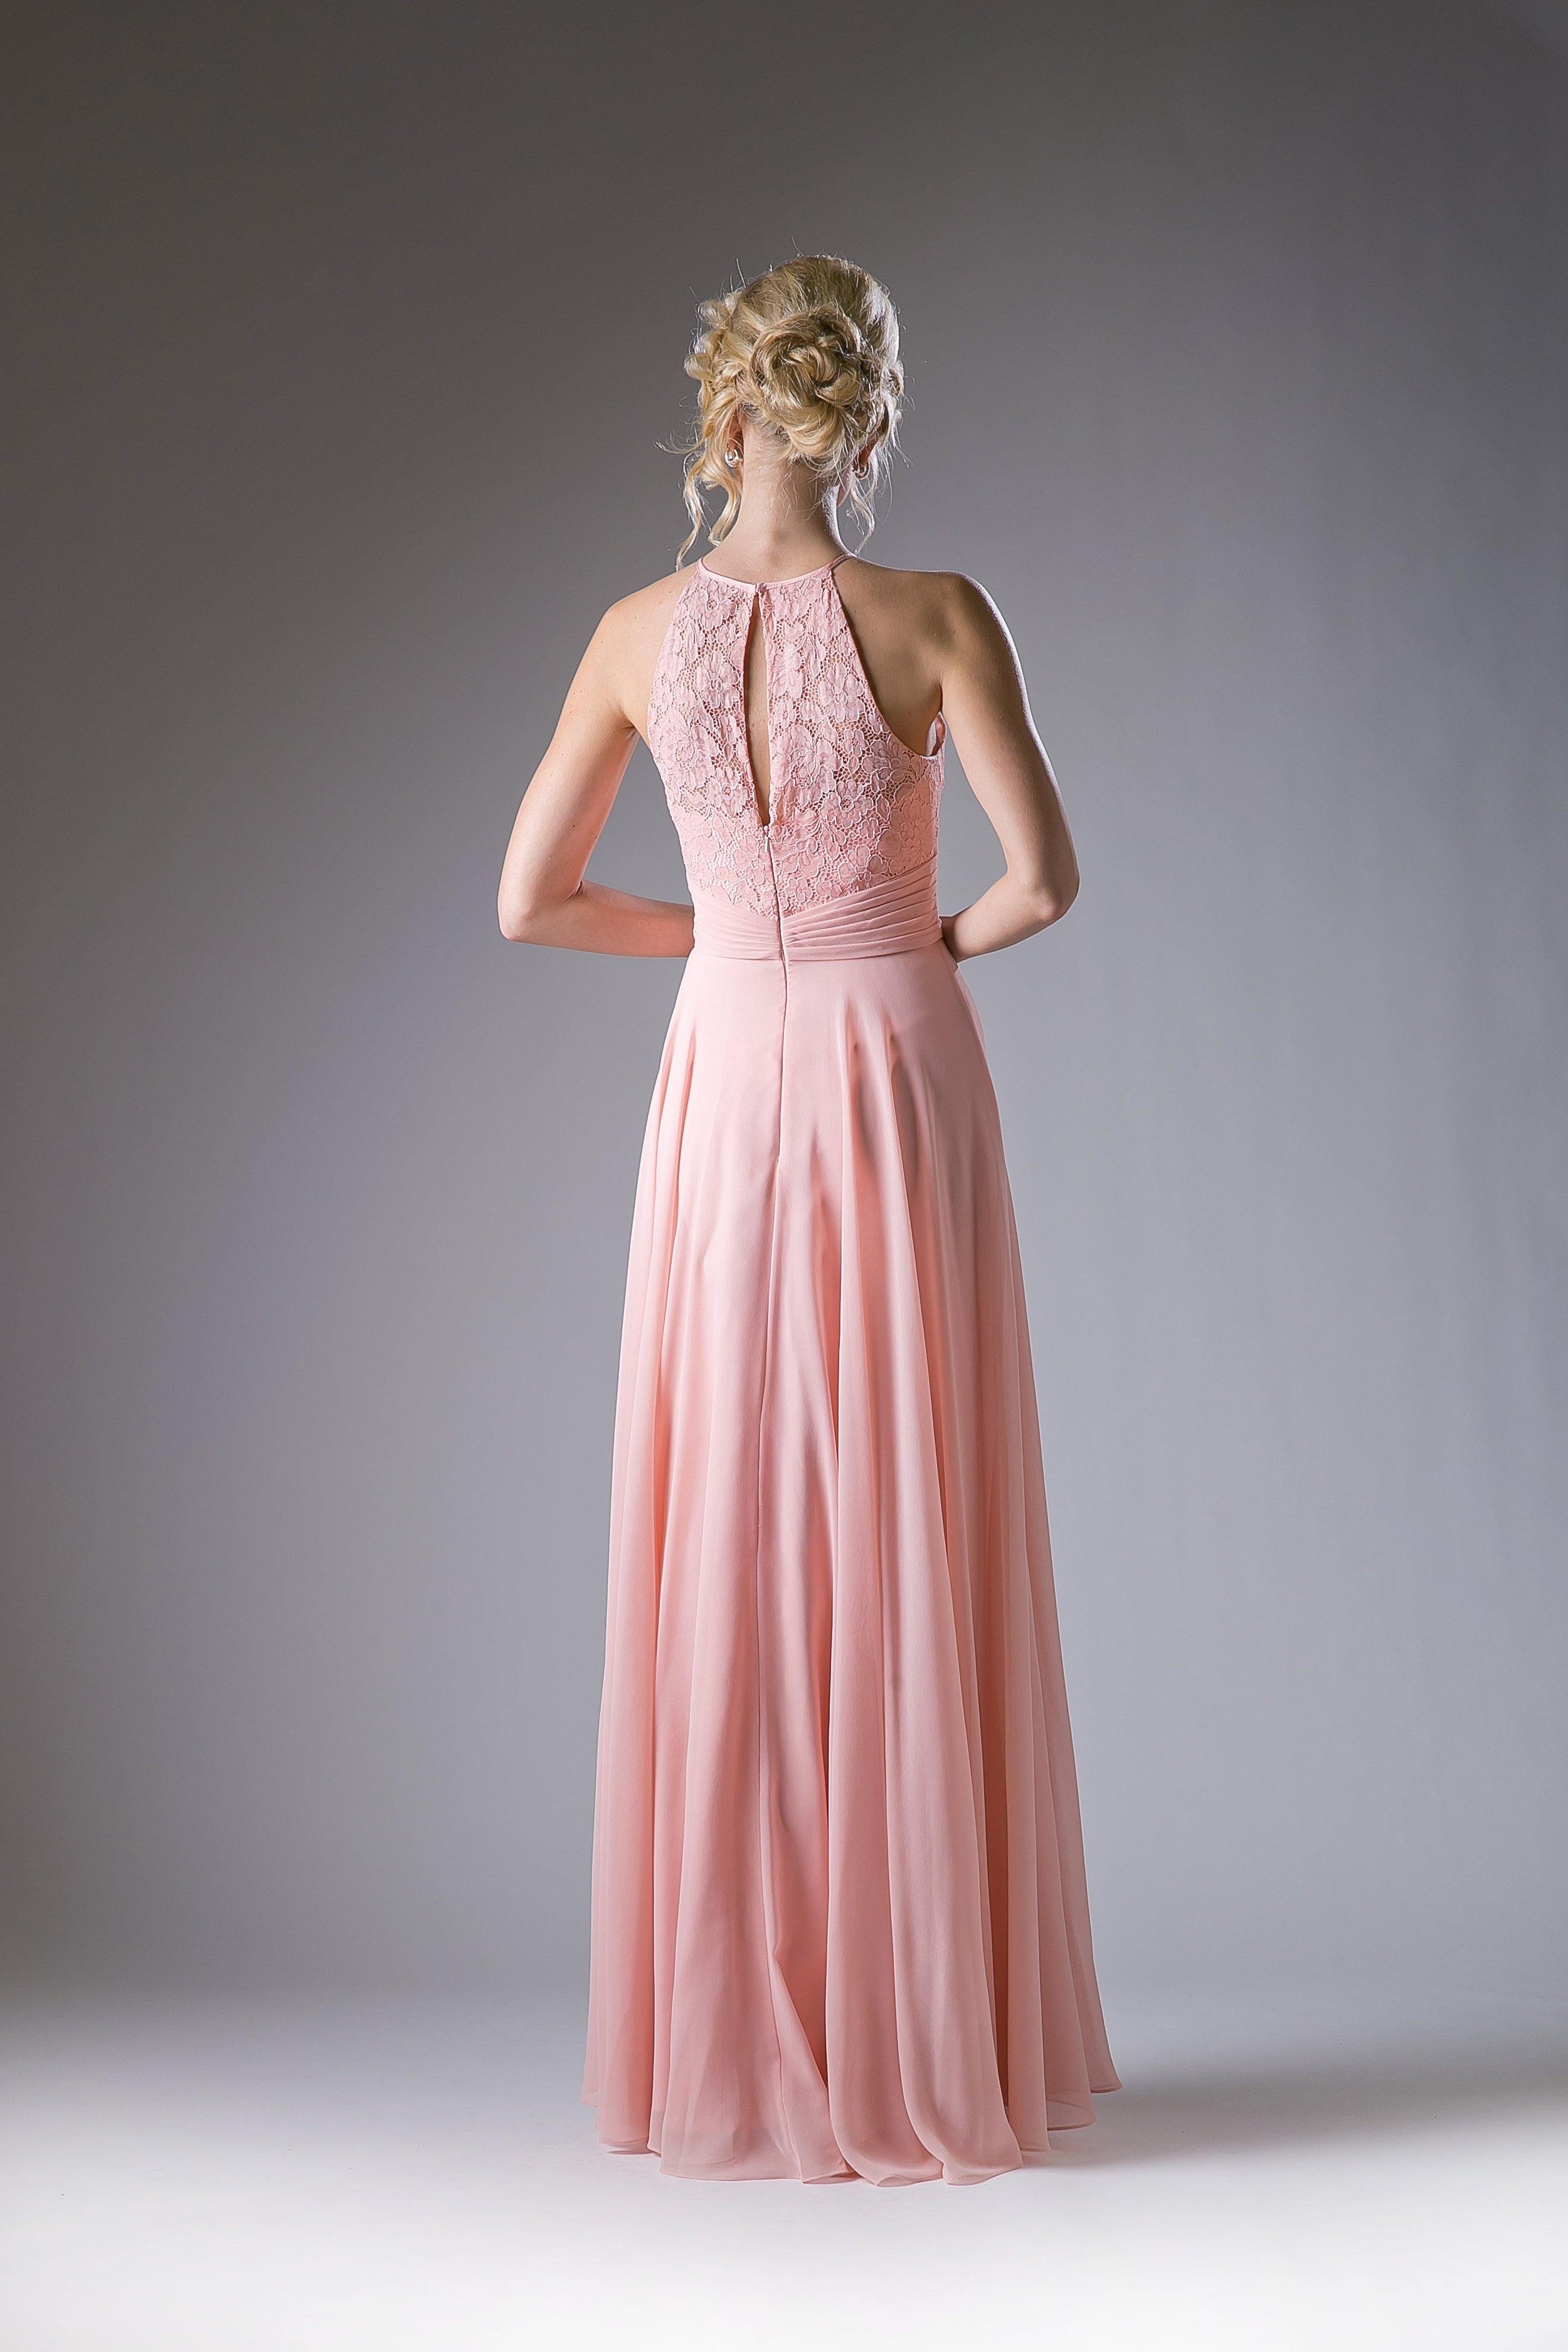 Long Formal Dress Halter Bridesmaid - The Dress Outlet Cinderella Divine